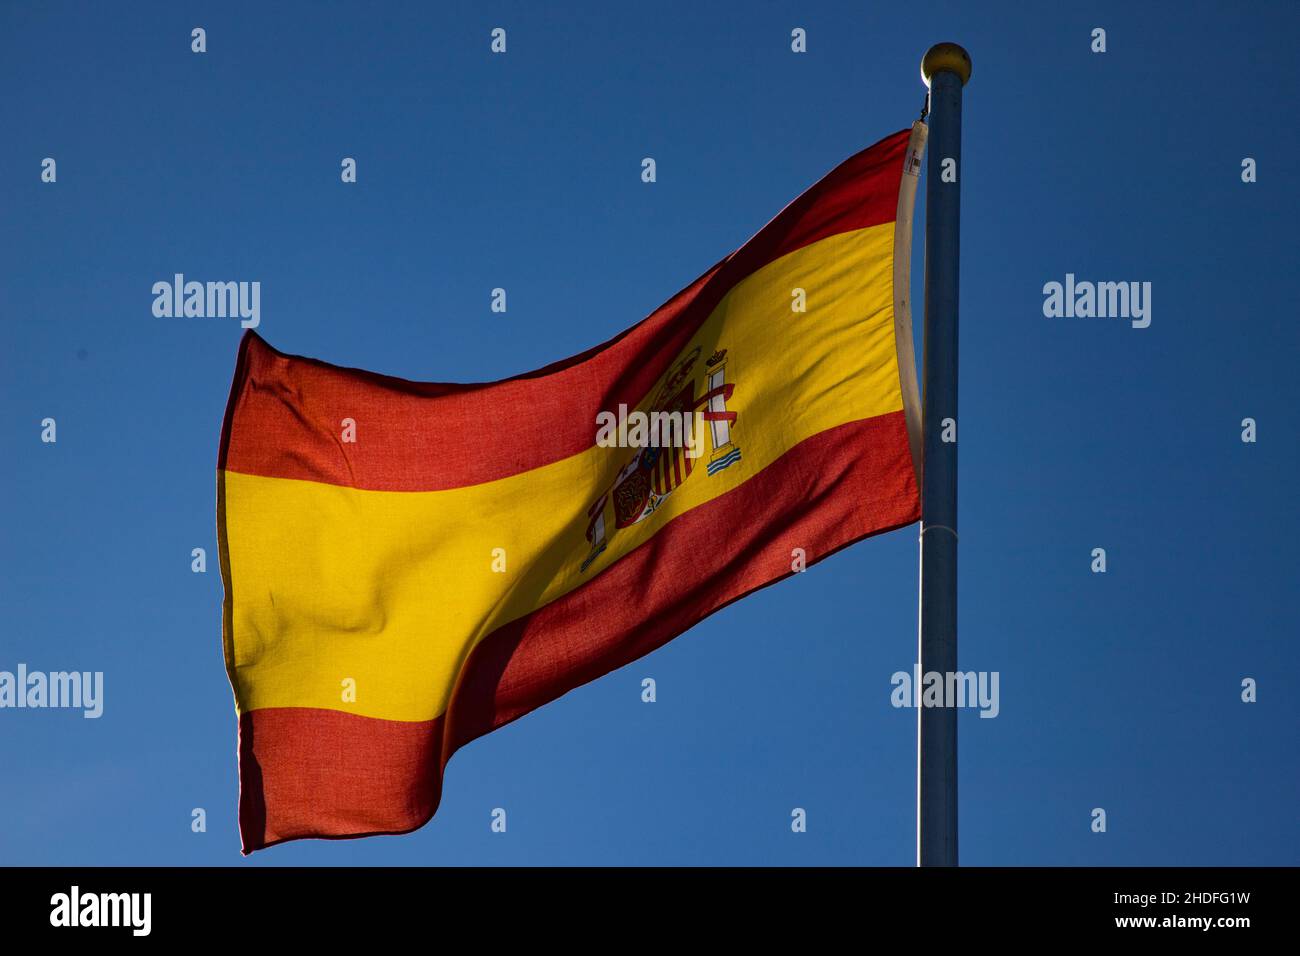 drapeau espagnol sur fond bleu Banque D'Images